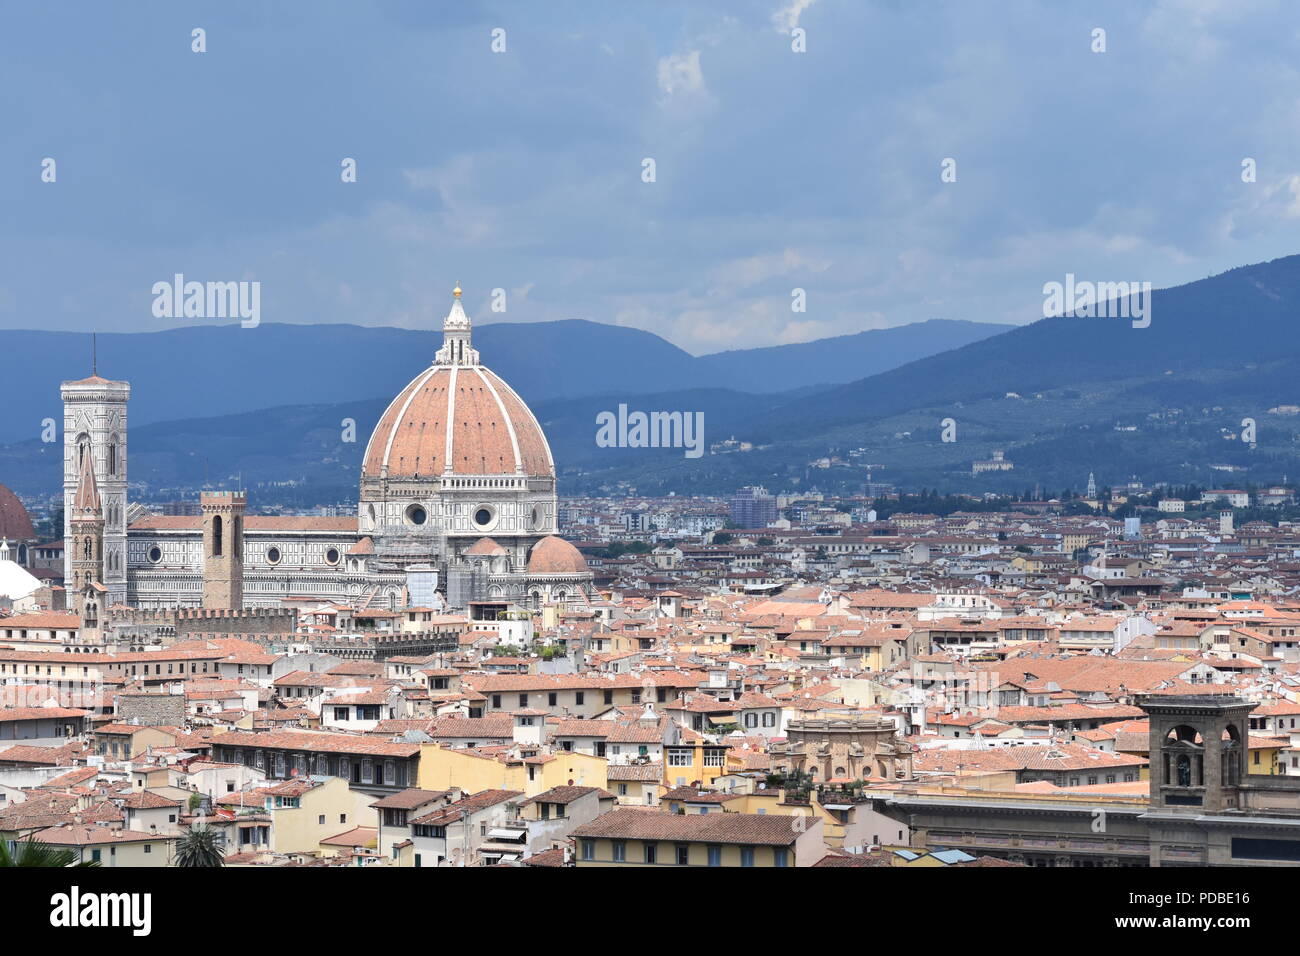 Stimmungsvolle Beleuchtung und Moody Blue bewölkte Himmel über der Skyline von Florenz droht mit dem Dom und dem Turm, mit dem dunstigen toskanischen Hügel. Stockfoto